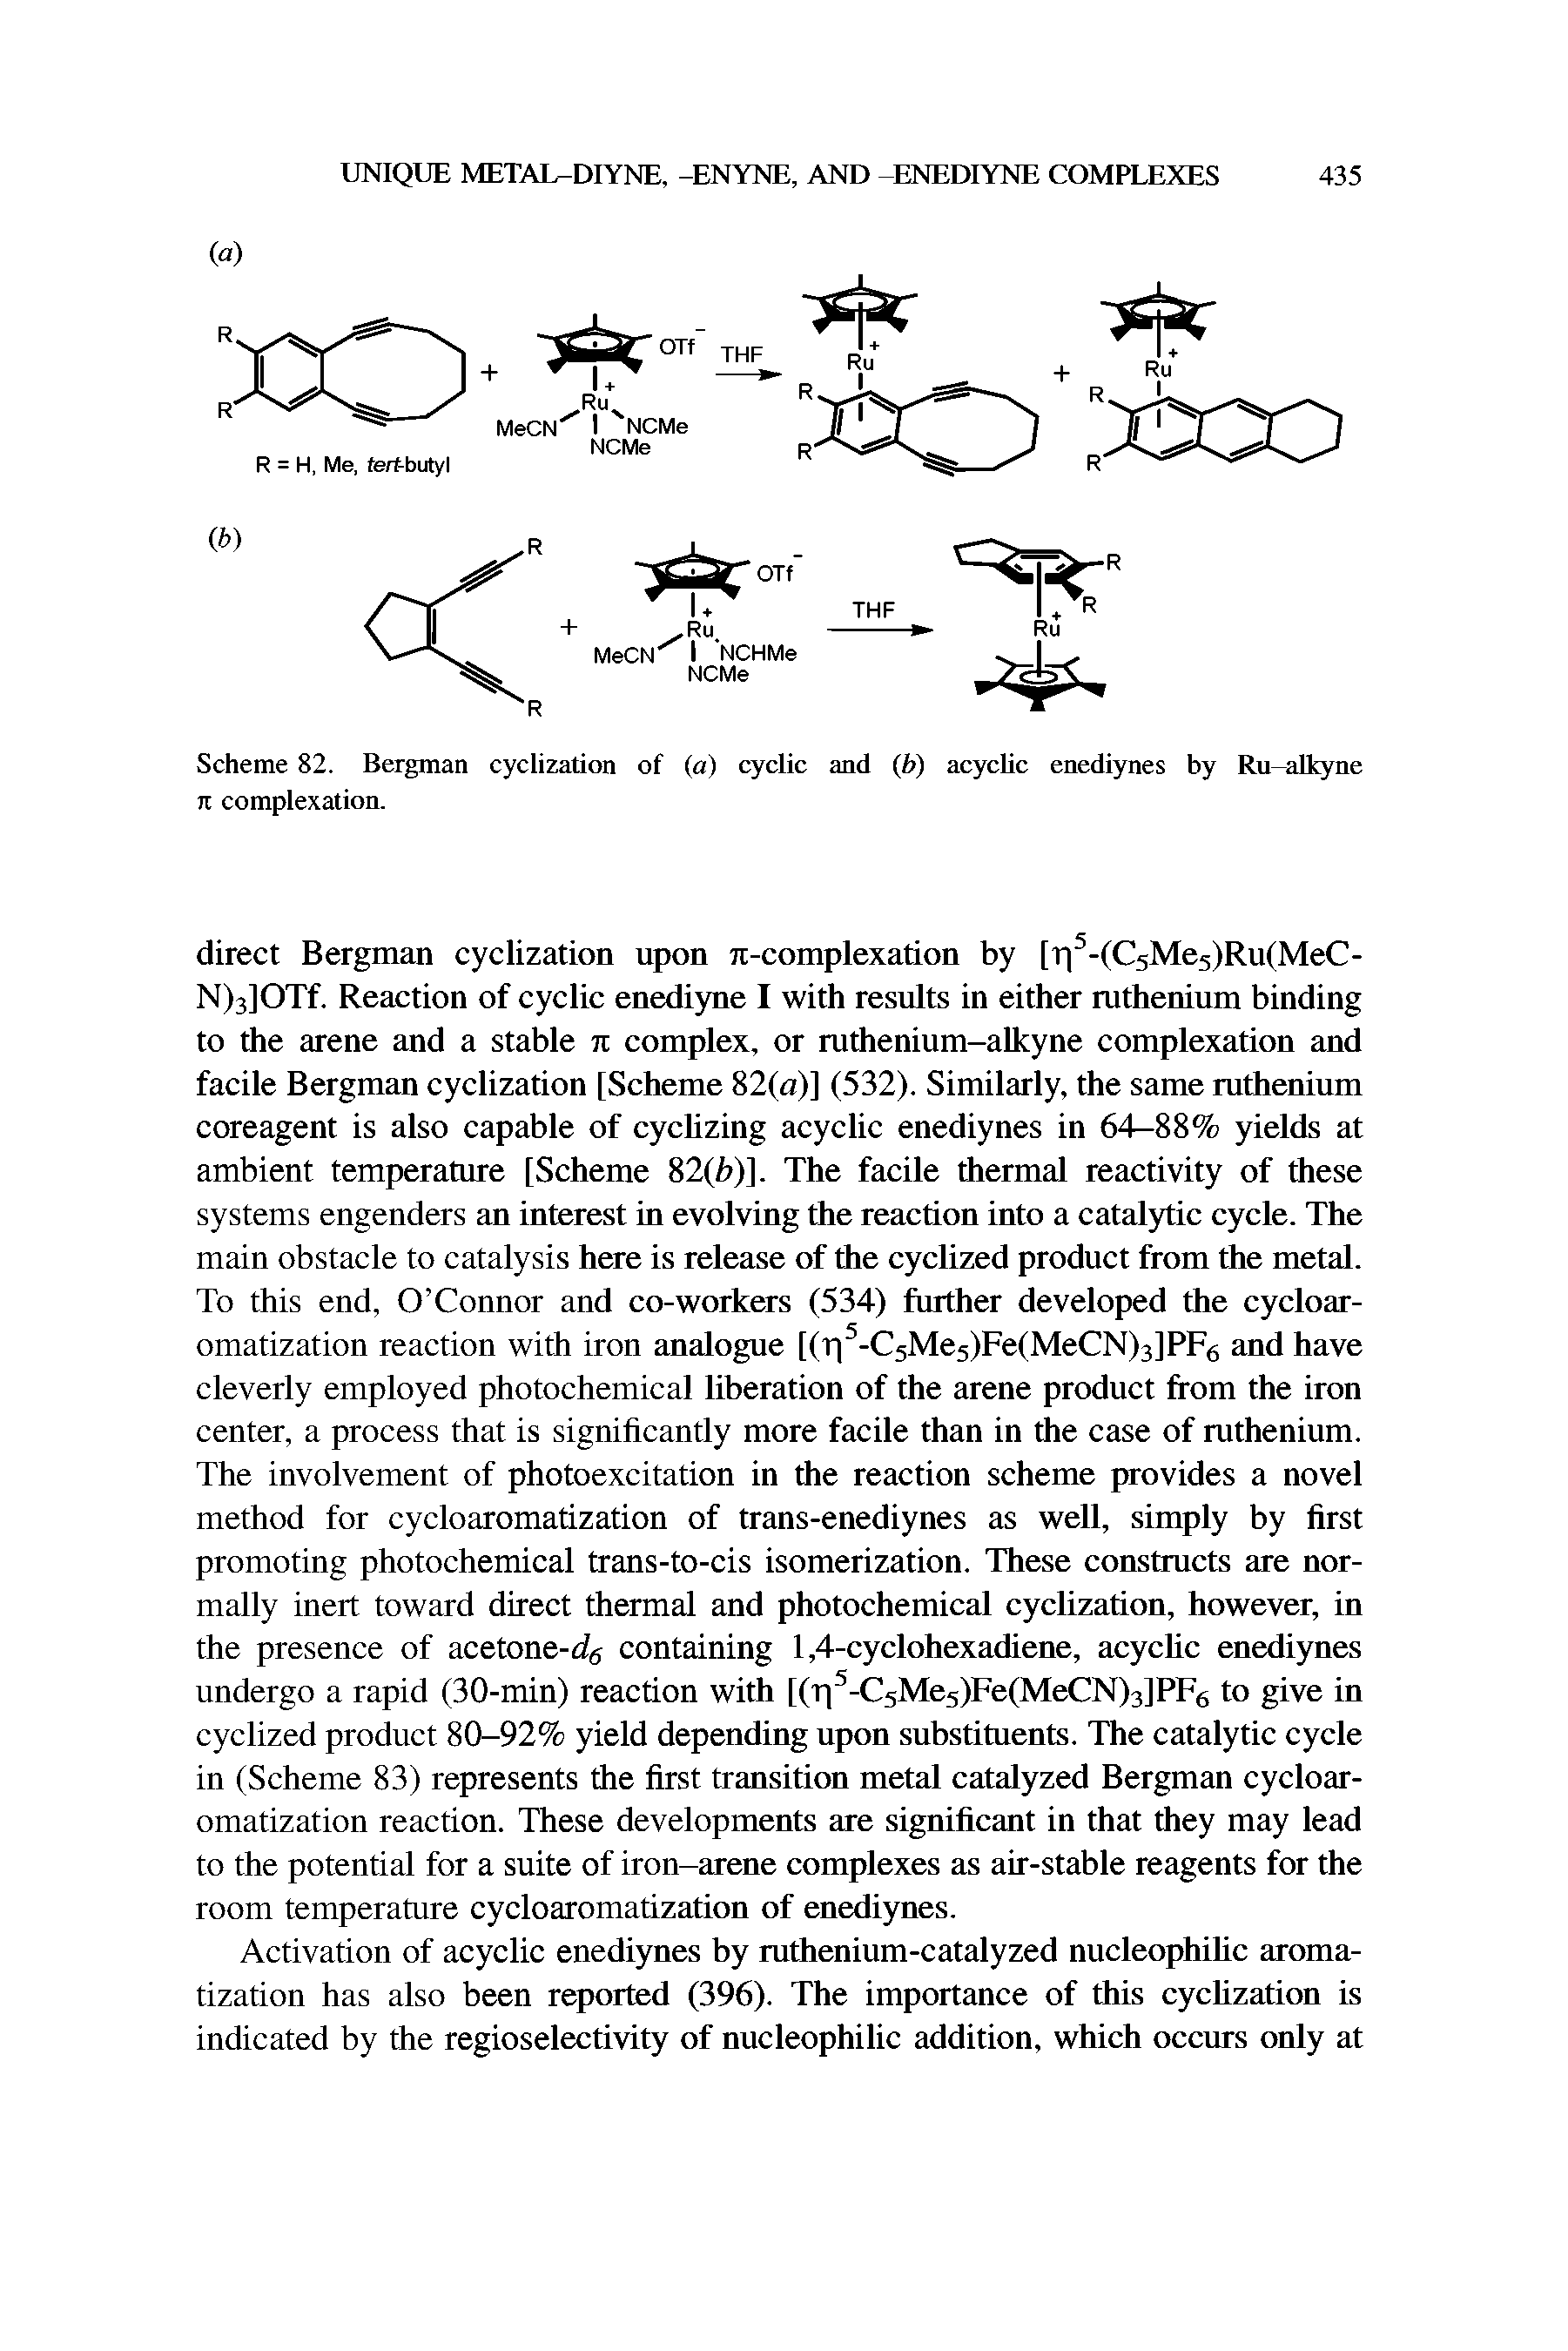 Scheme 82. Bergman cyclization of (a) cyclic and (fo) acyclic enediynes by Ru-alkyne It complexation.